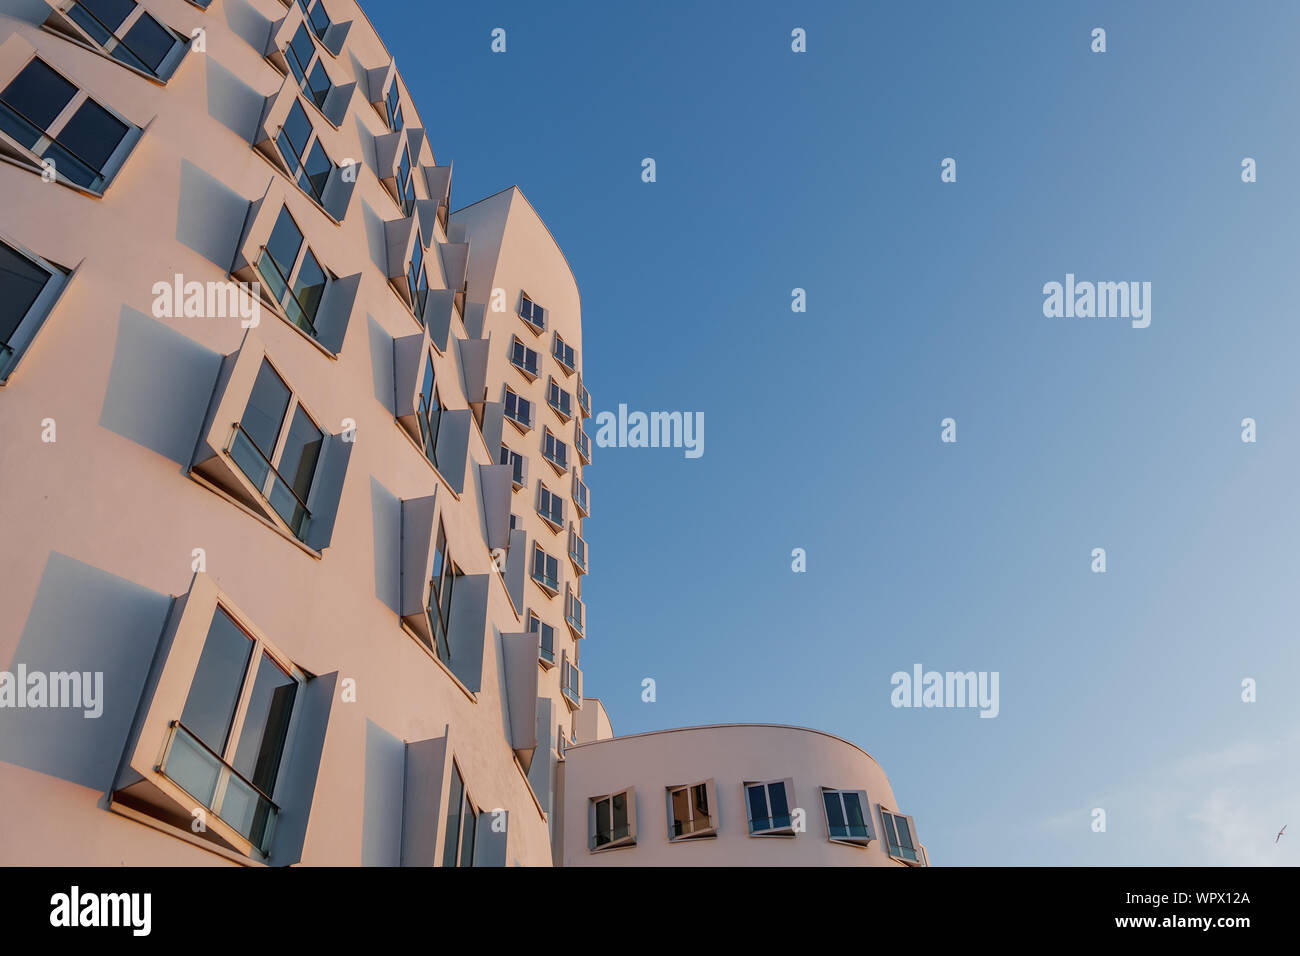 Ansicht der Krümmung Form der weißen Fassade Fassade mit rechteckigen Fenstern, von ikonischen Architektur an Madiahafen während des Sonnenuntergangs Zeit und Dämmerung Himmel. Stockfoto